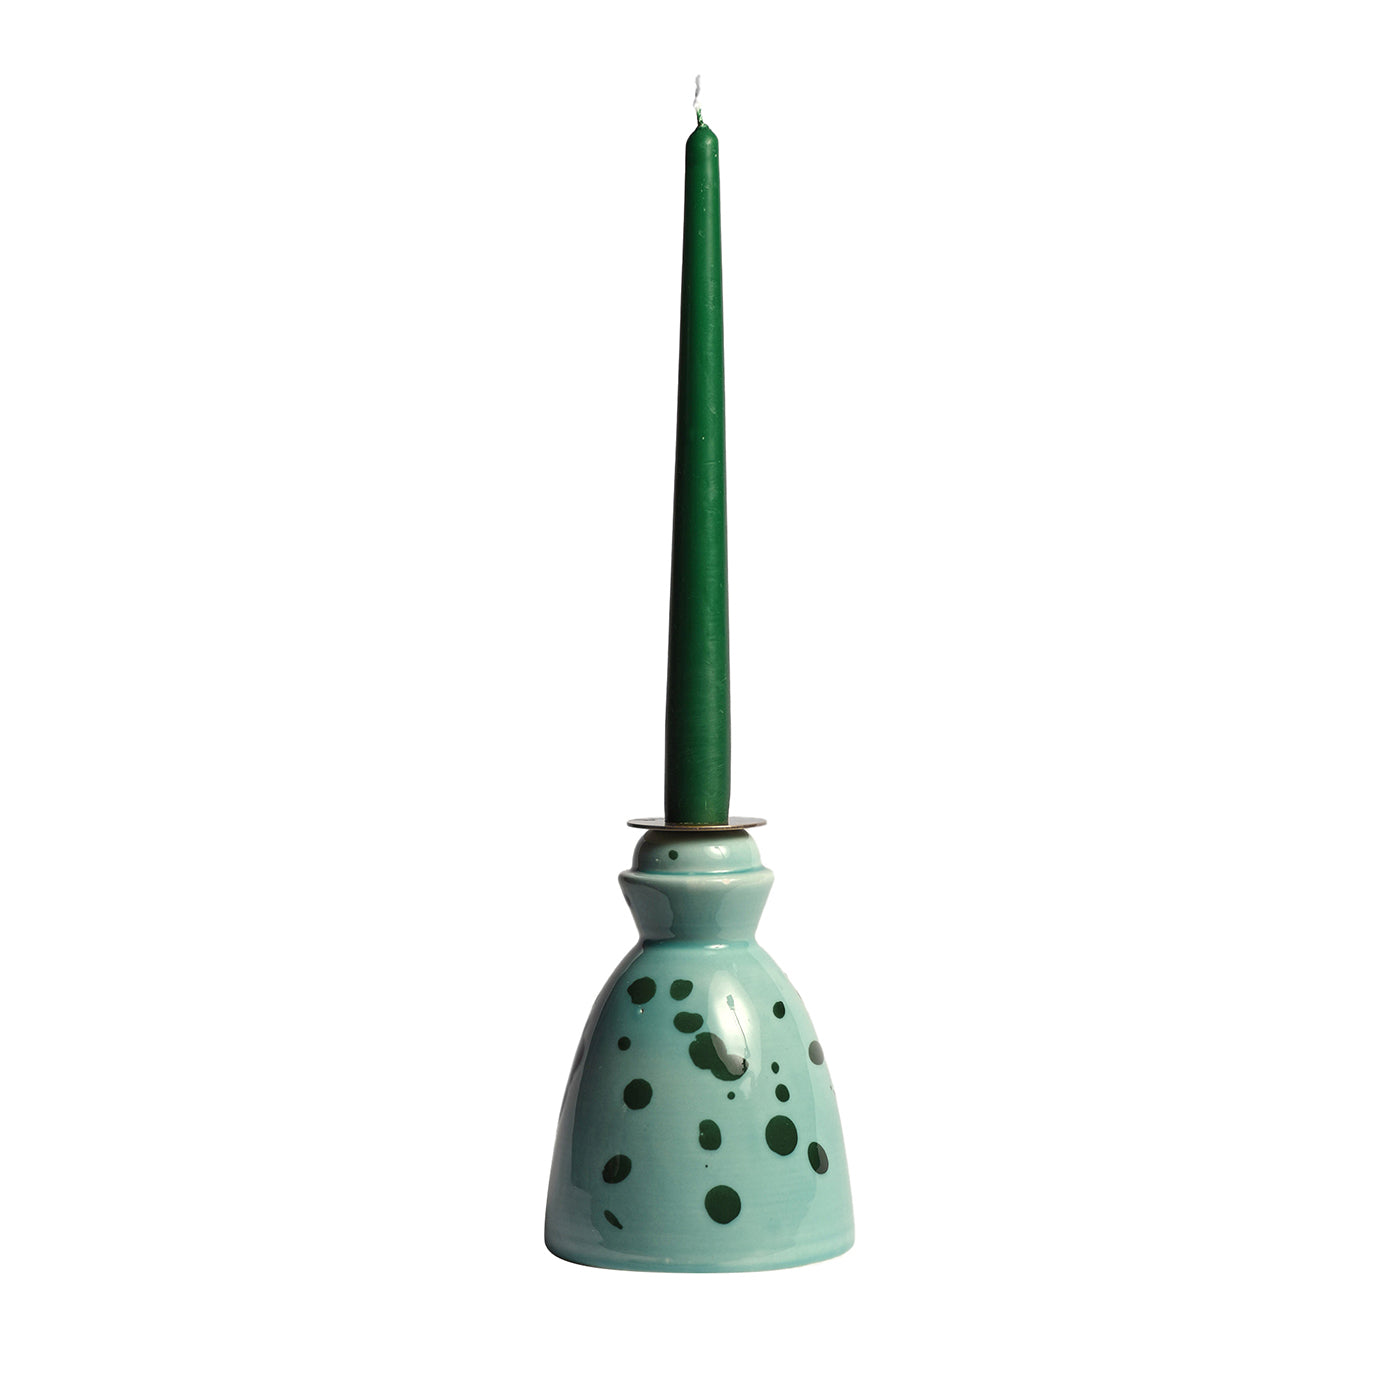 Grüner Keramik-Kerzenständer mit 4 Duftkerzen - Hauptansicht